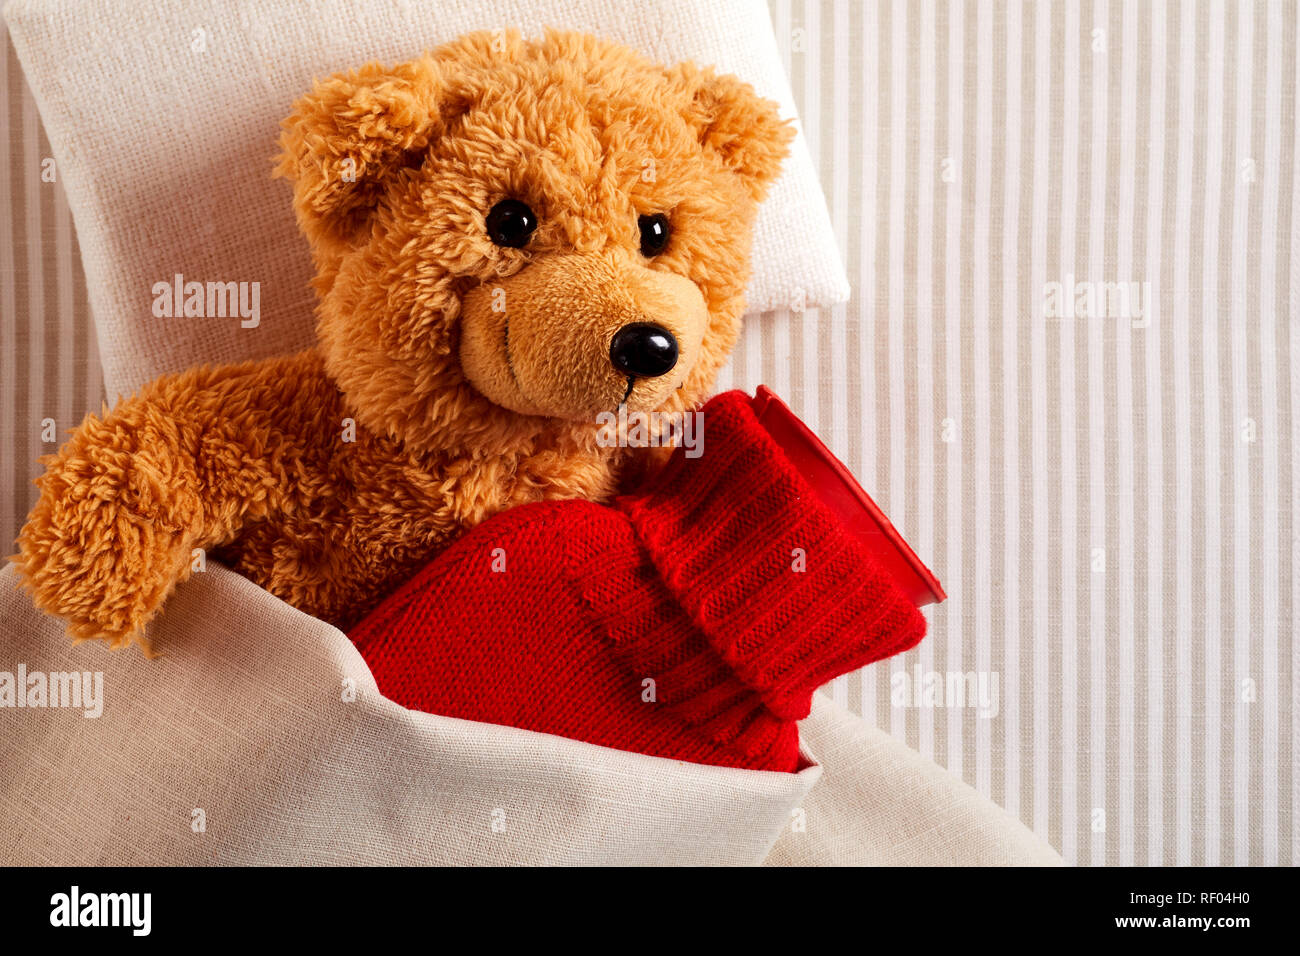 Kranker kleiner Teddybär mit Fieber Kuscheln im Bett mit einer Wärmflasche  in einem hellen Rot gestrickt Abdeckung in einem Konzept der pädiatrischen  Healthcare Stockfotografie - Alamy